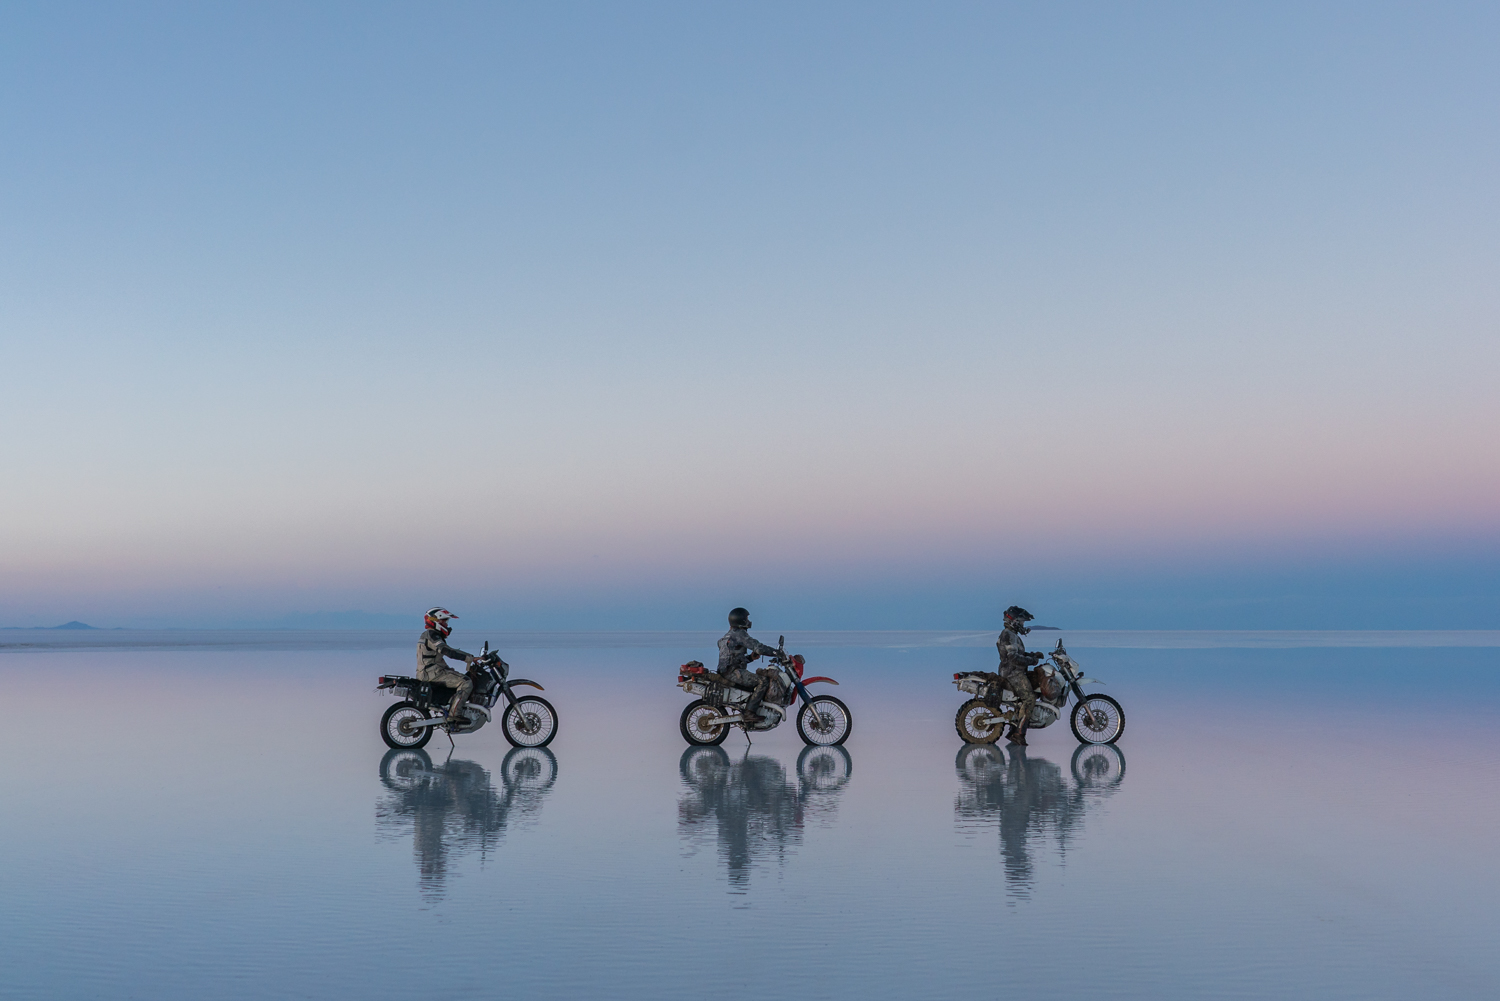 Salt Flats on a Motorcycle